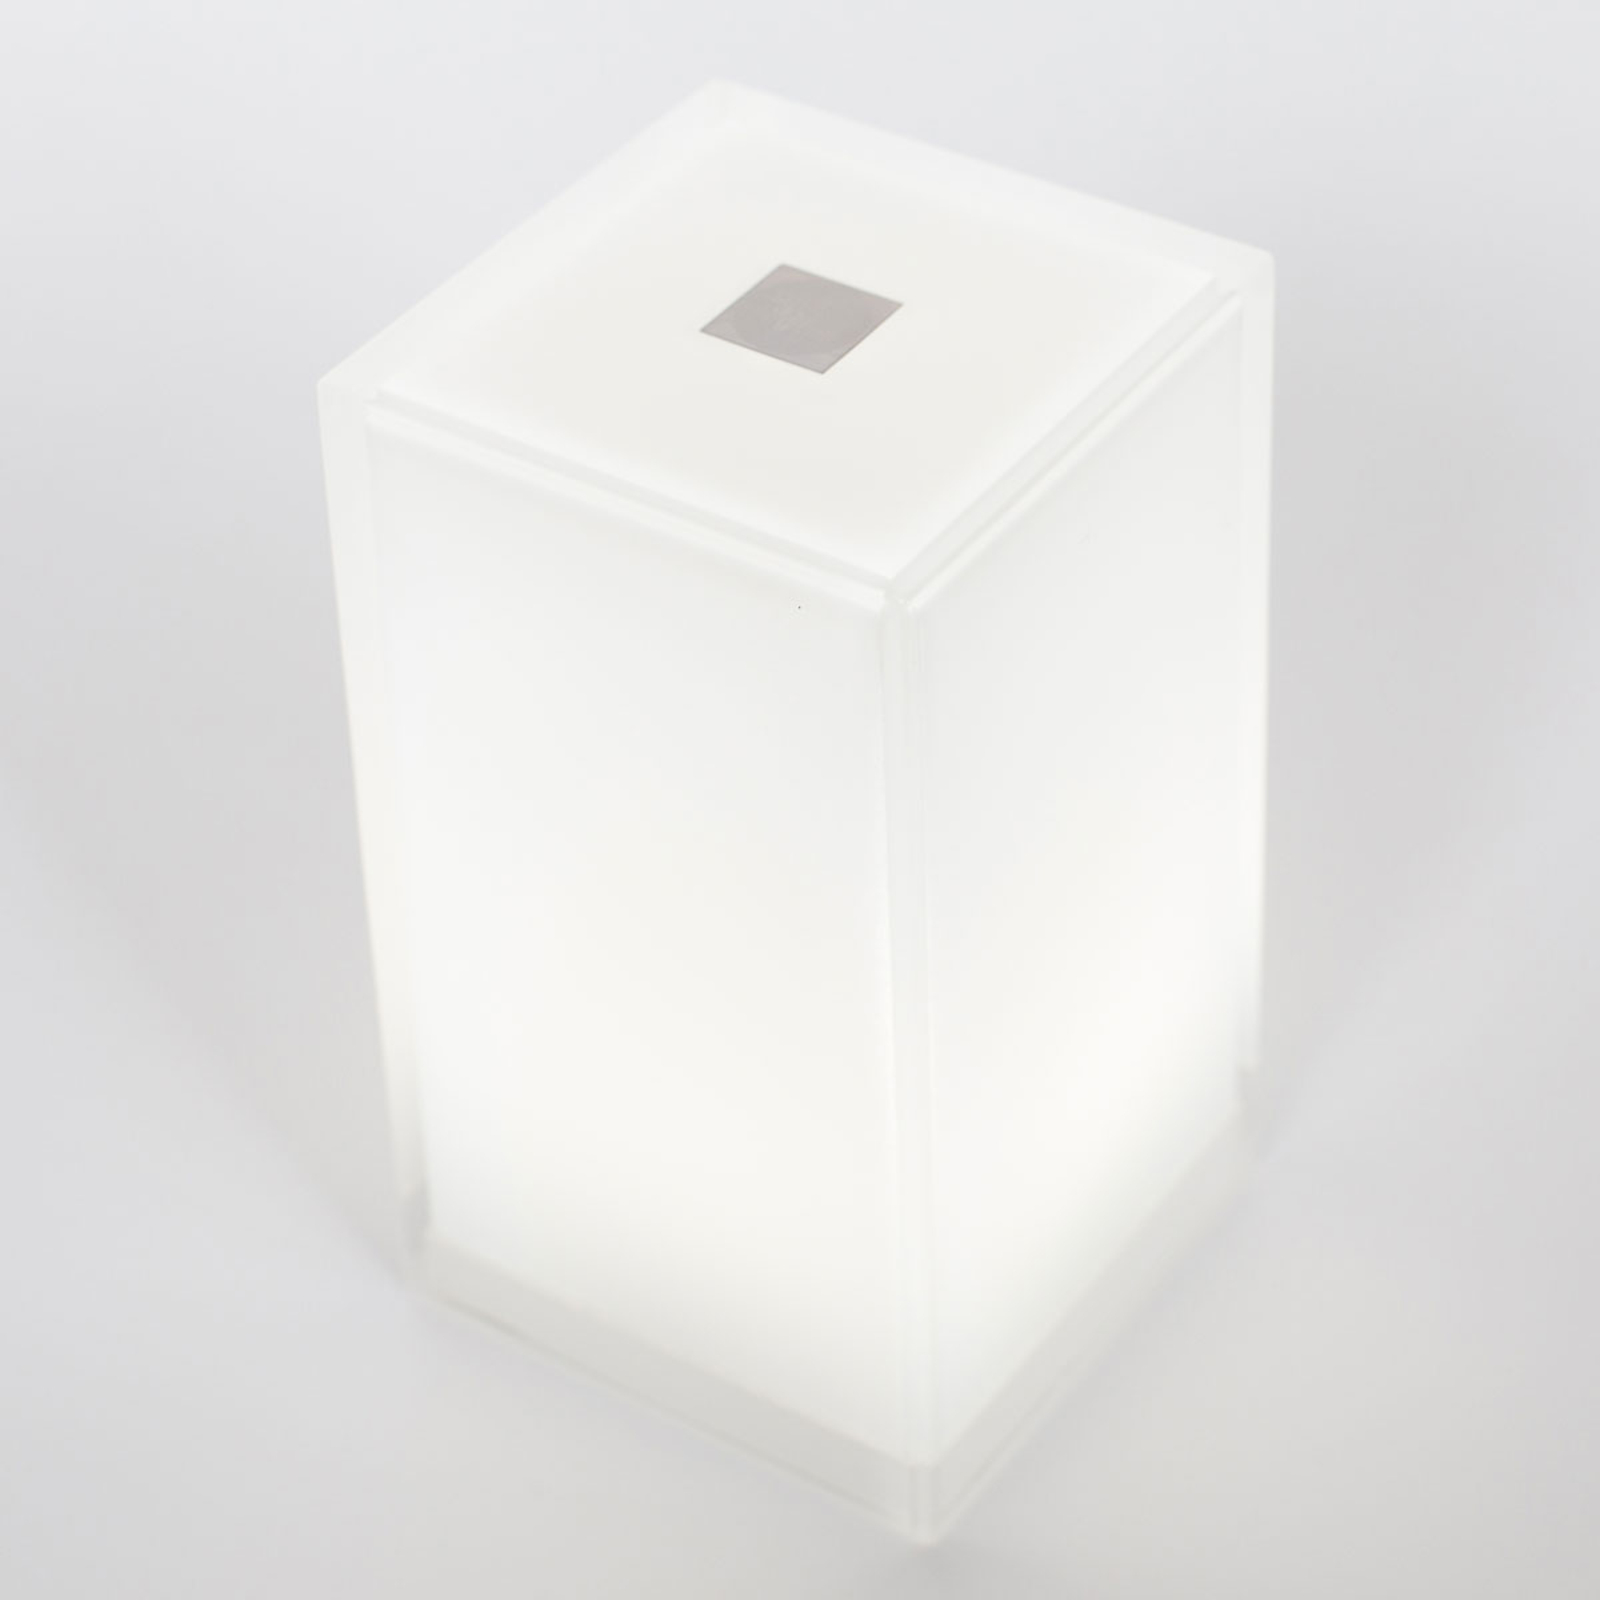 Cub-pöytävalaisin 6 kpl:n pakkauksessa, sovelluksella ohjattavissa, RGBW